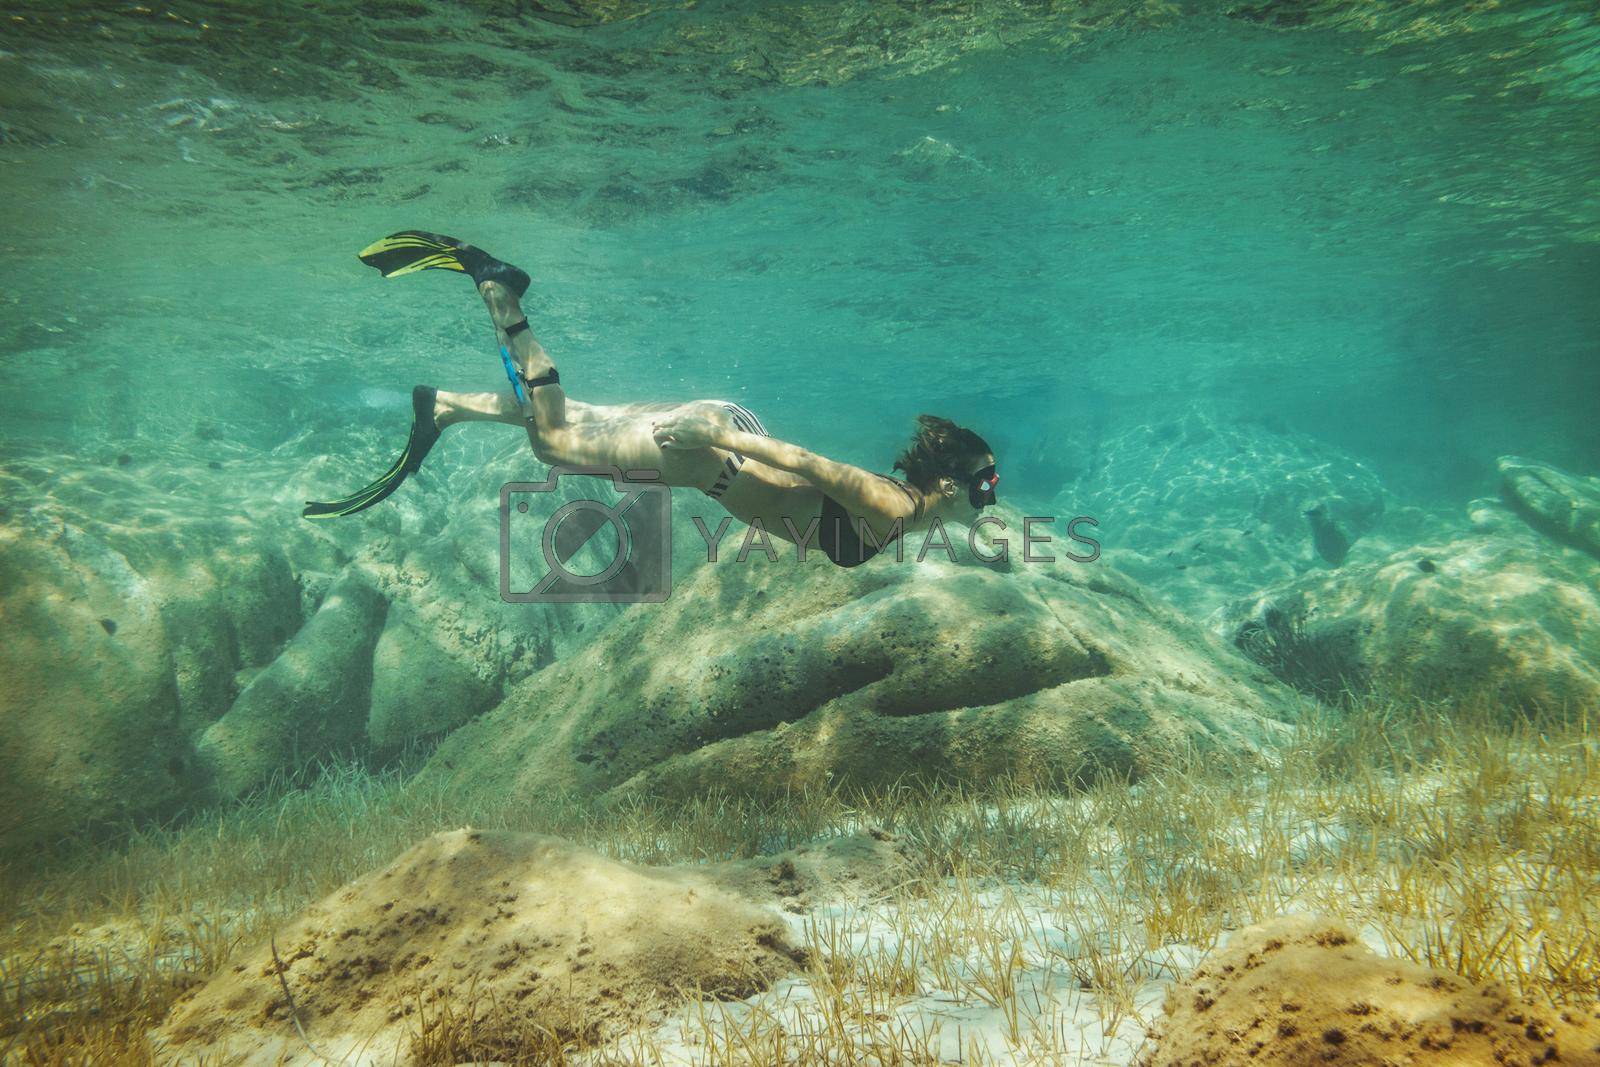 Royalty free image of Enjoying Deep Water by MilanMarkovic78